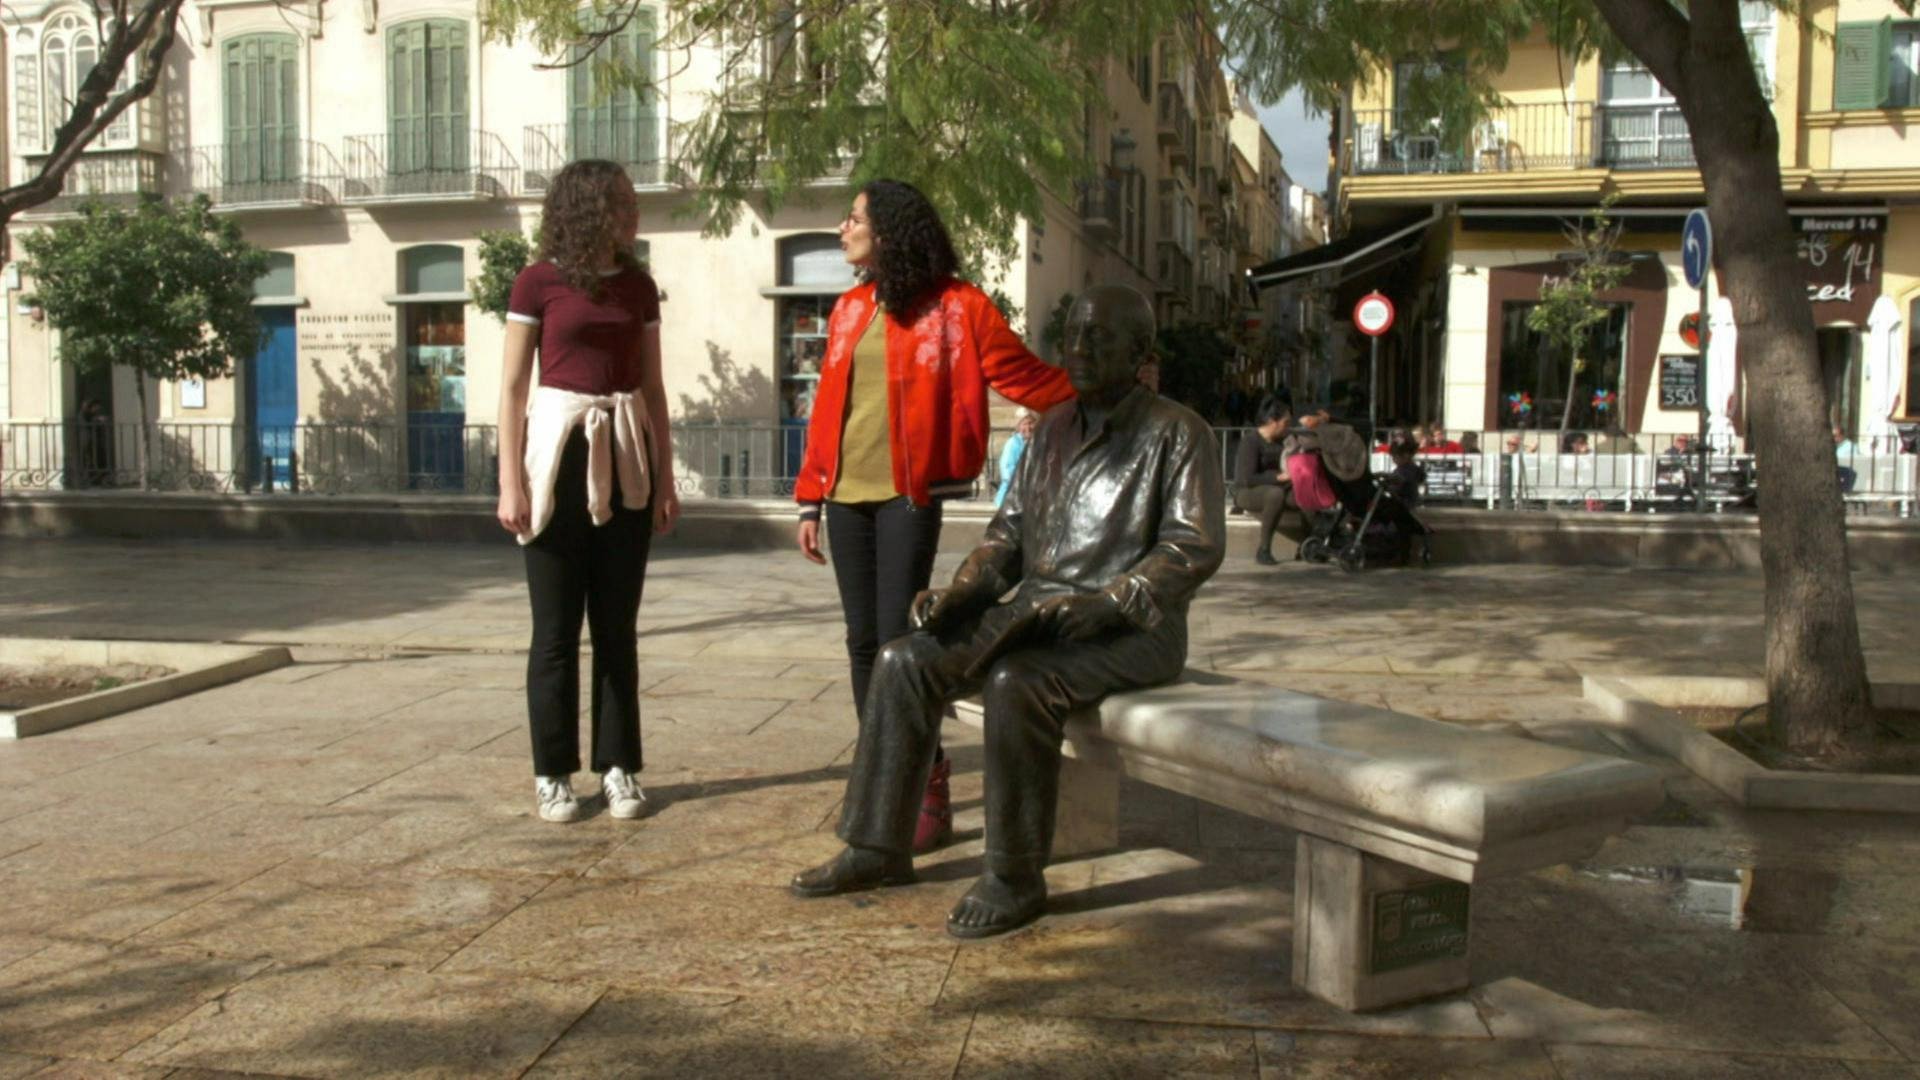 Zwei Frauen stehen auf einem Platz. Eine der beiden legt ihre Hand auf eine Bronzestatue eines Mannes, der auf einer Bank sitzt. (Foto: WDR)